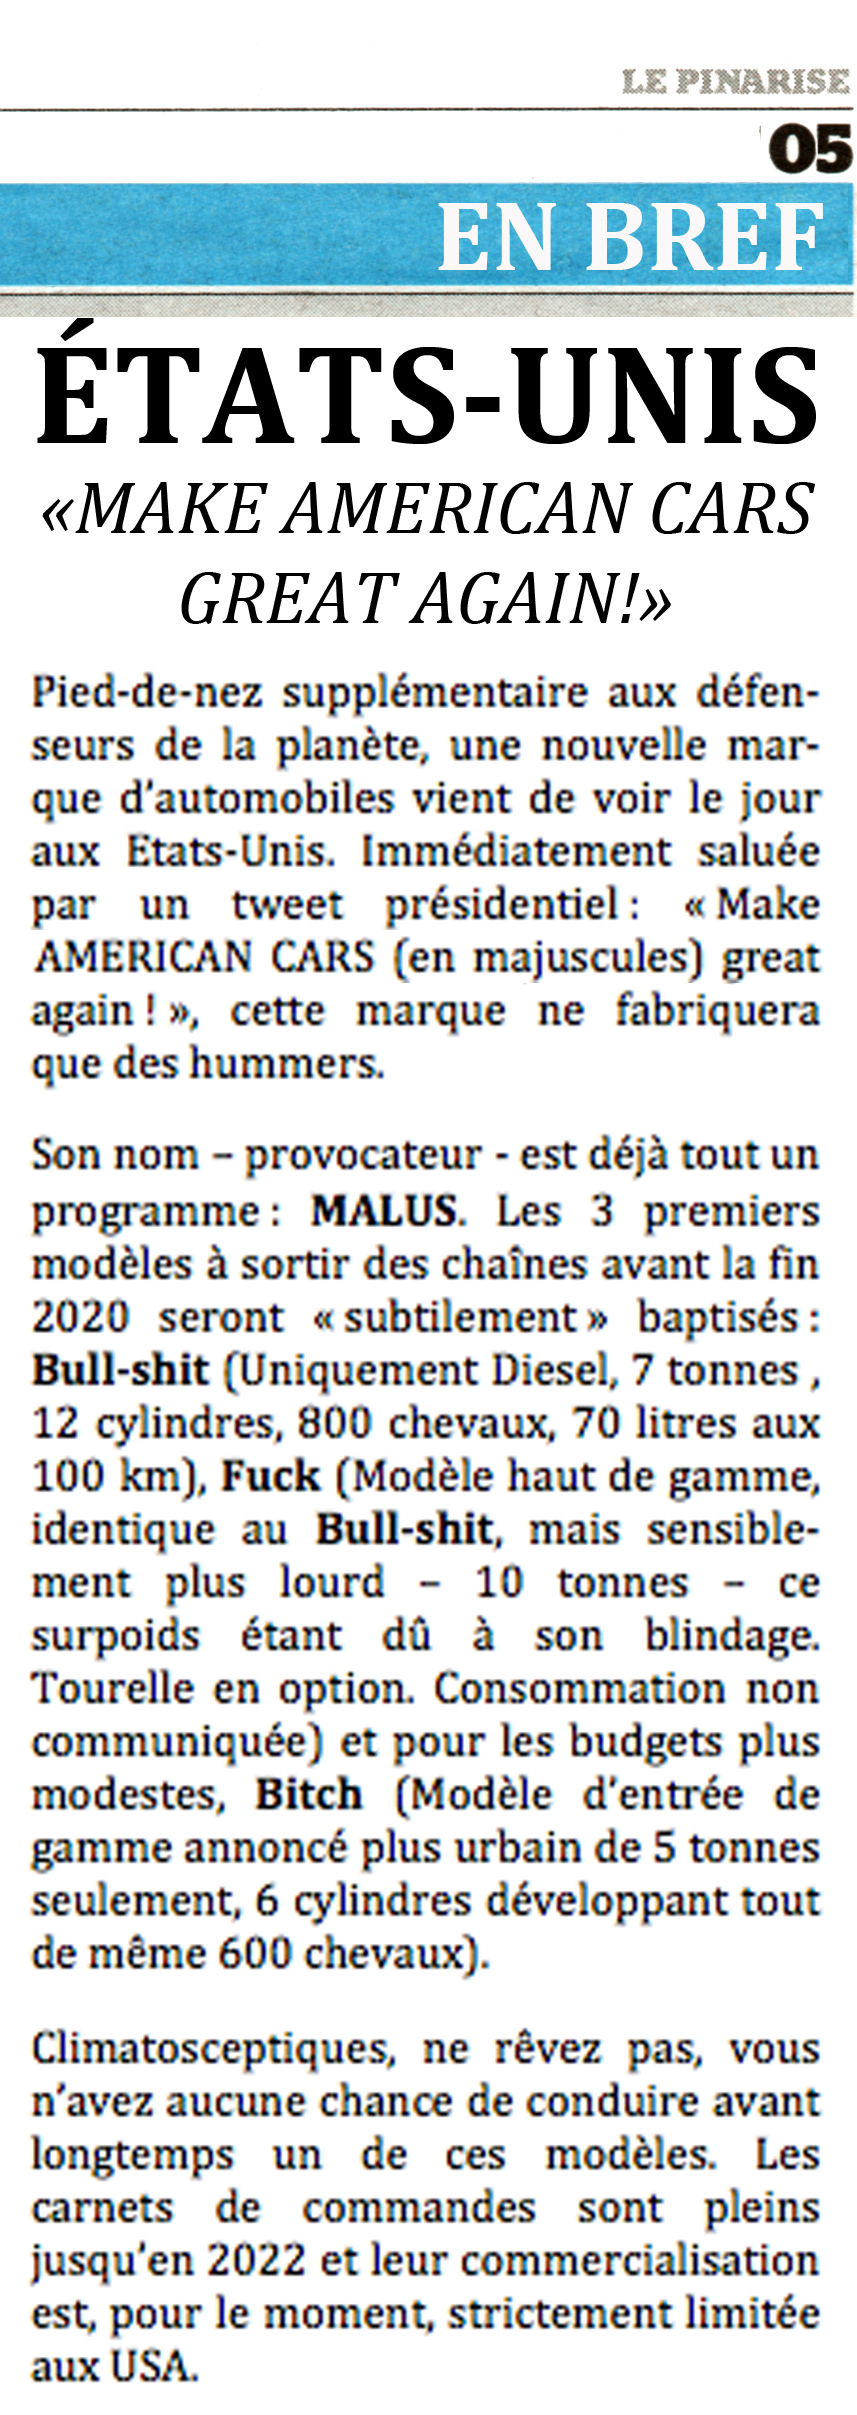 American cars © Philippe Mignon - Choses revues - délibéré